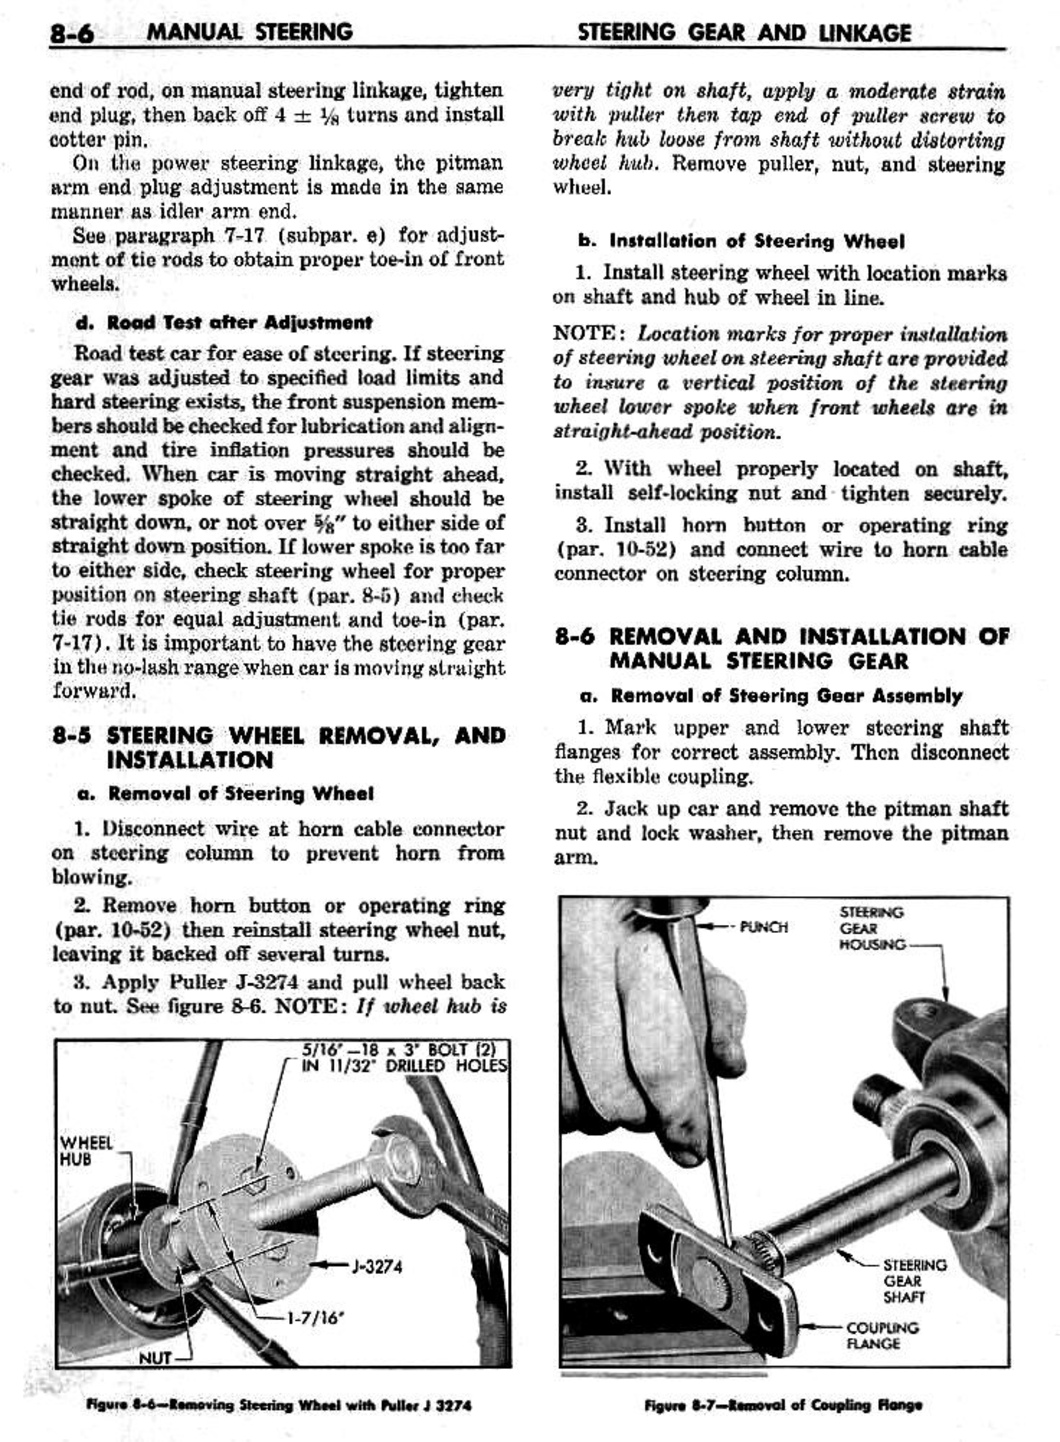 n_09 1959 Buick Shop Manual - Steering-006-006.jpg